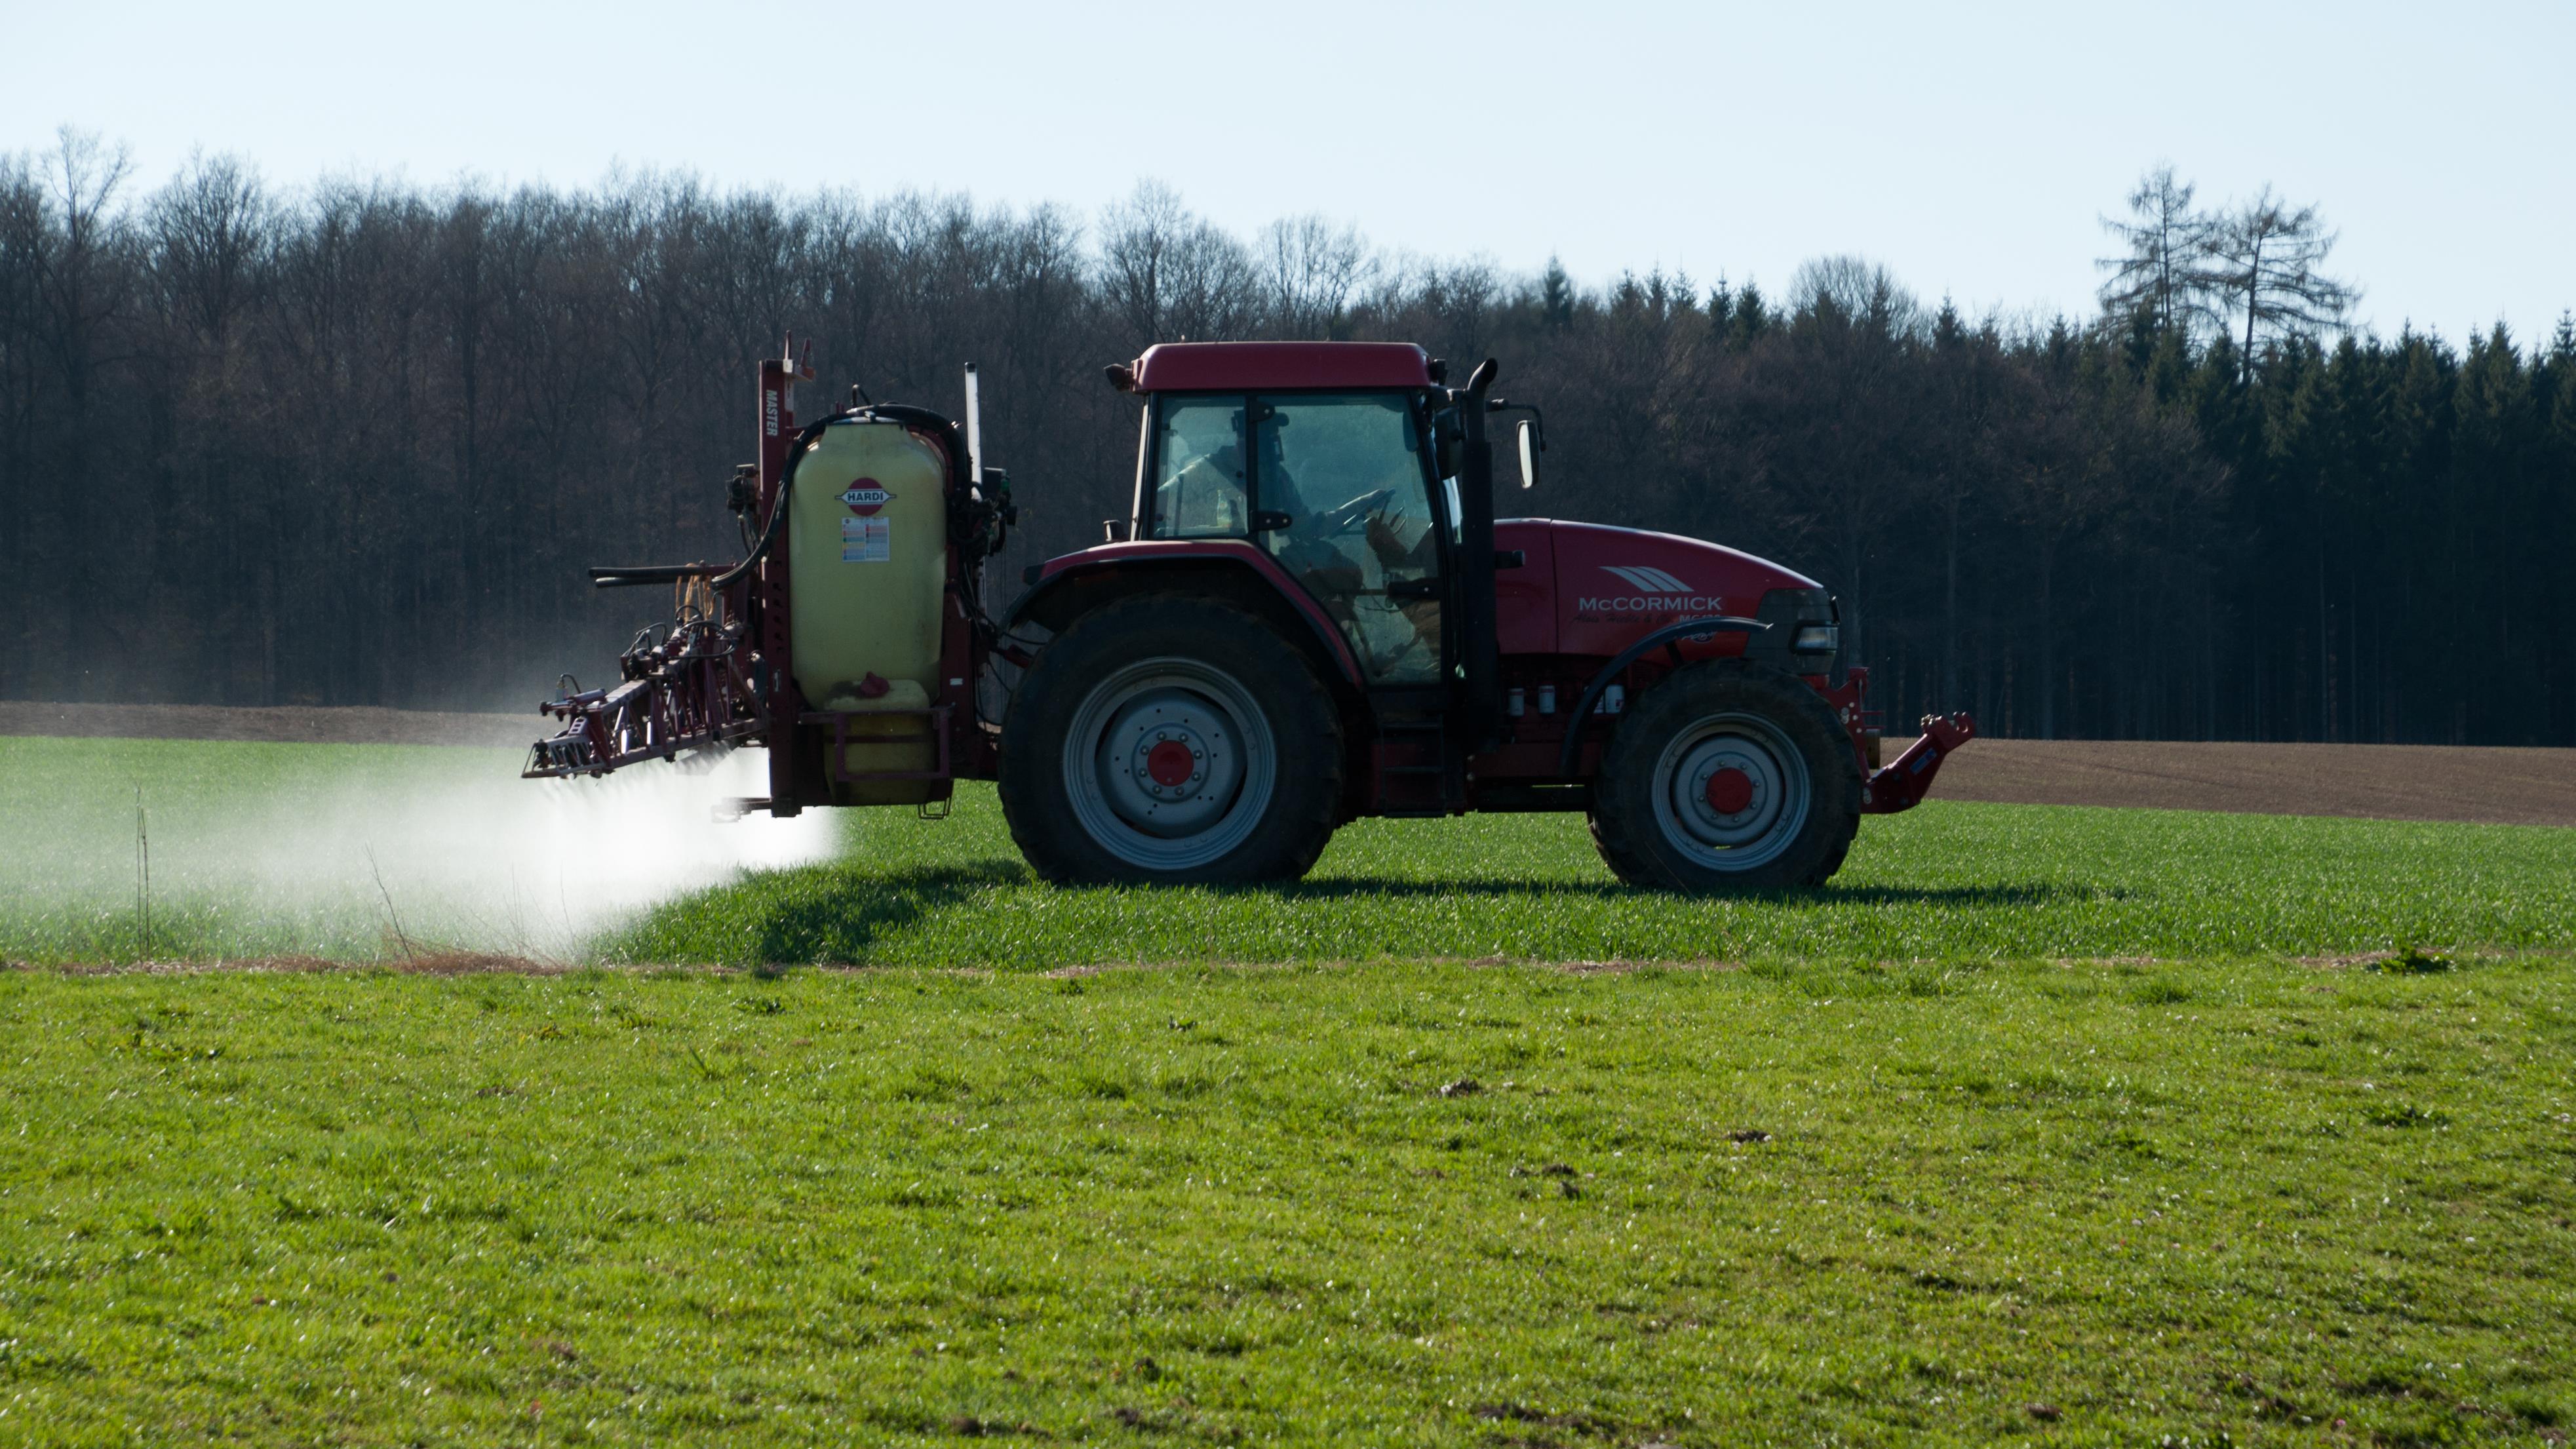 Des producteurs agricoles redoutent les contrecoups de la réglementation sur les pesticides